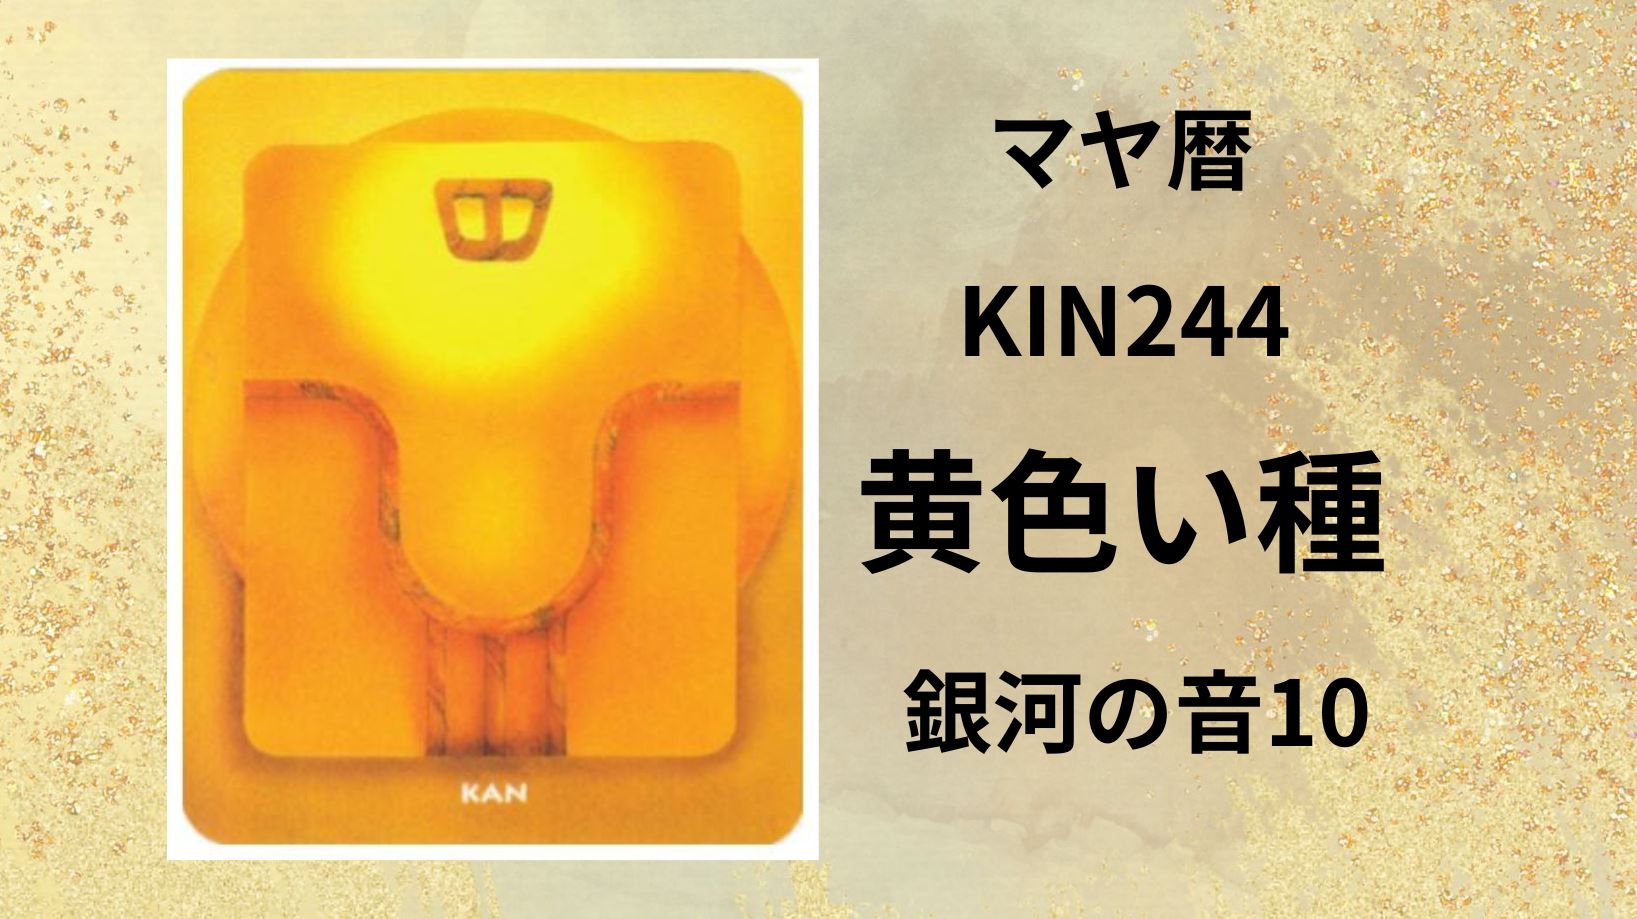 【マヤ暦-今日はどんな日】KIN244「黄色い種」のメッセージ